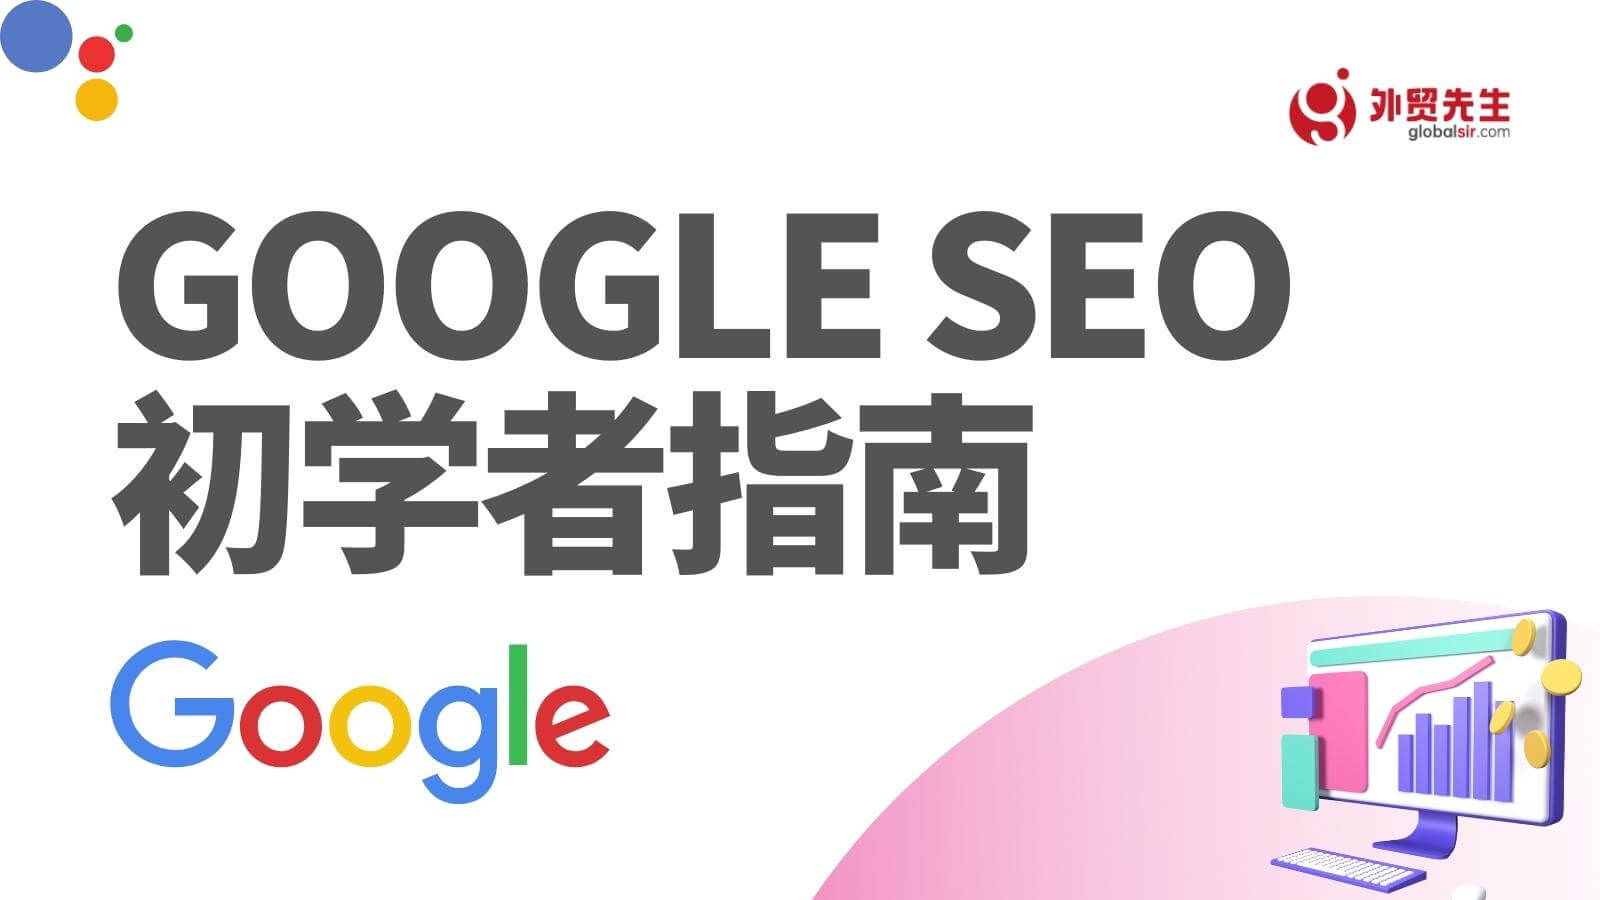 谷歌引流(先上后付seo334.c0m)谷歌引流谷歌引流sO1谷歌seo培训谷歌seo